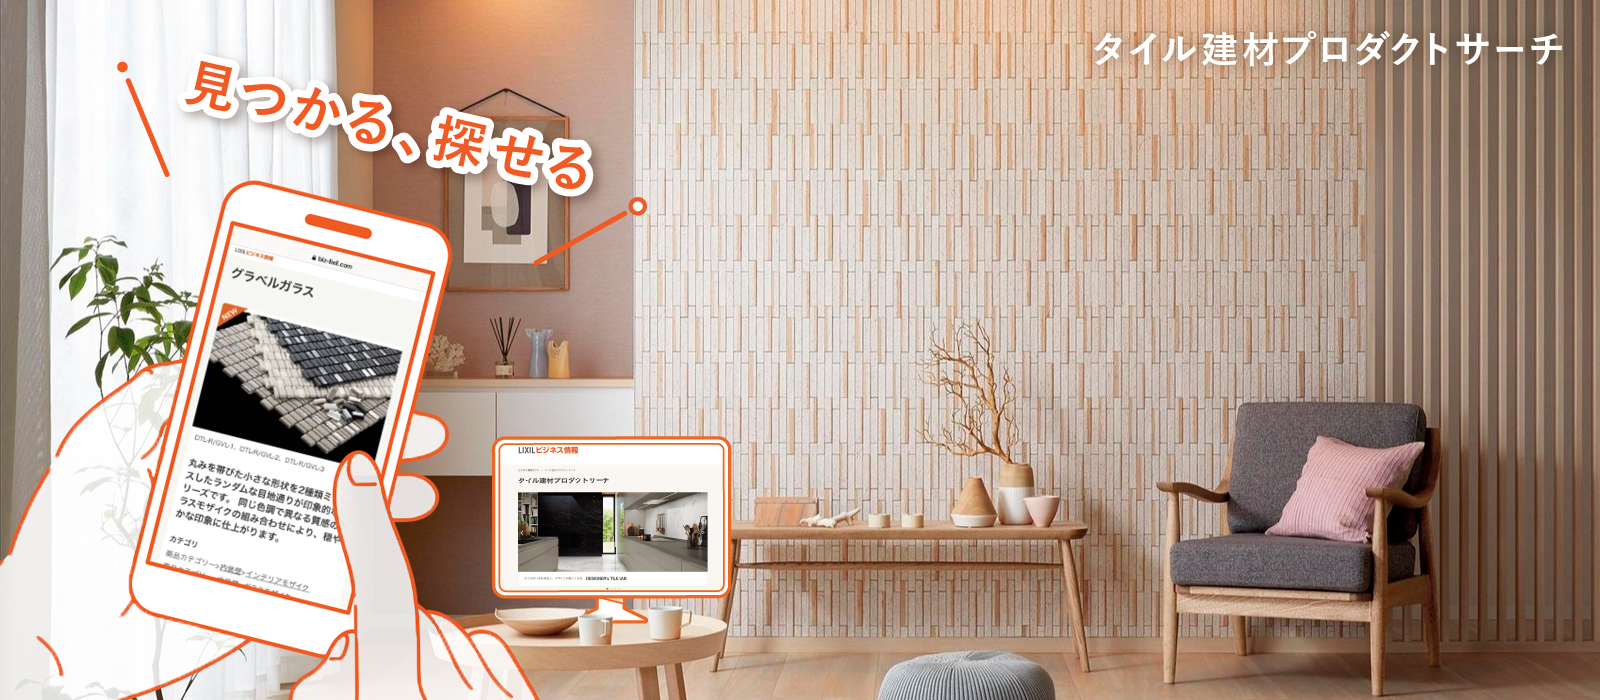 冊子カタログをデジタル化することで高い利便性で商品選定をサポートする 日本最大のタイル選定サイト「タイル建材 プロダクトサーチ」をオープン サムネイル画像